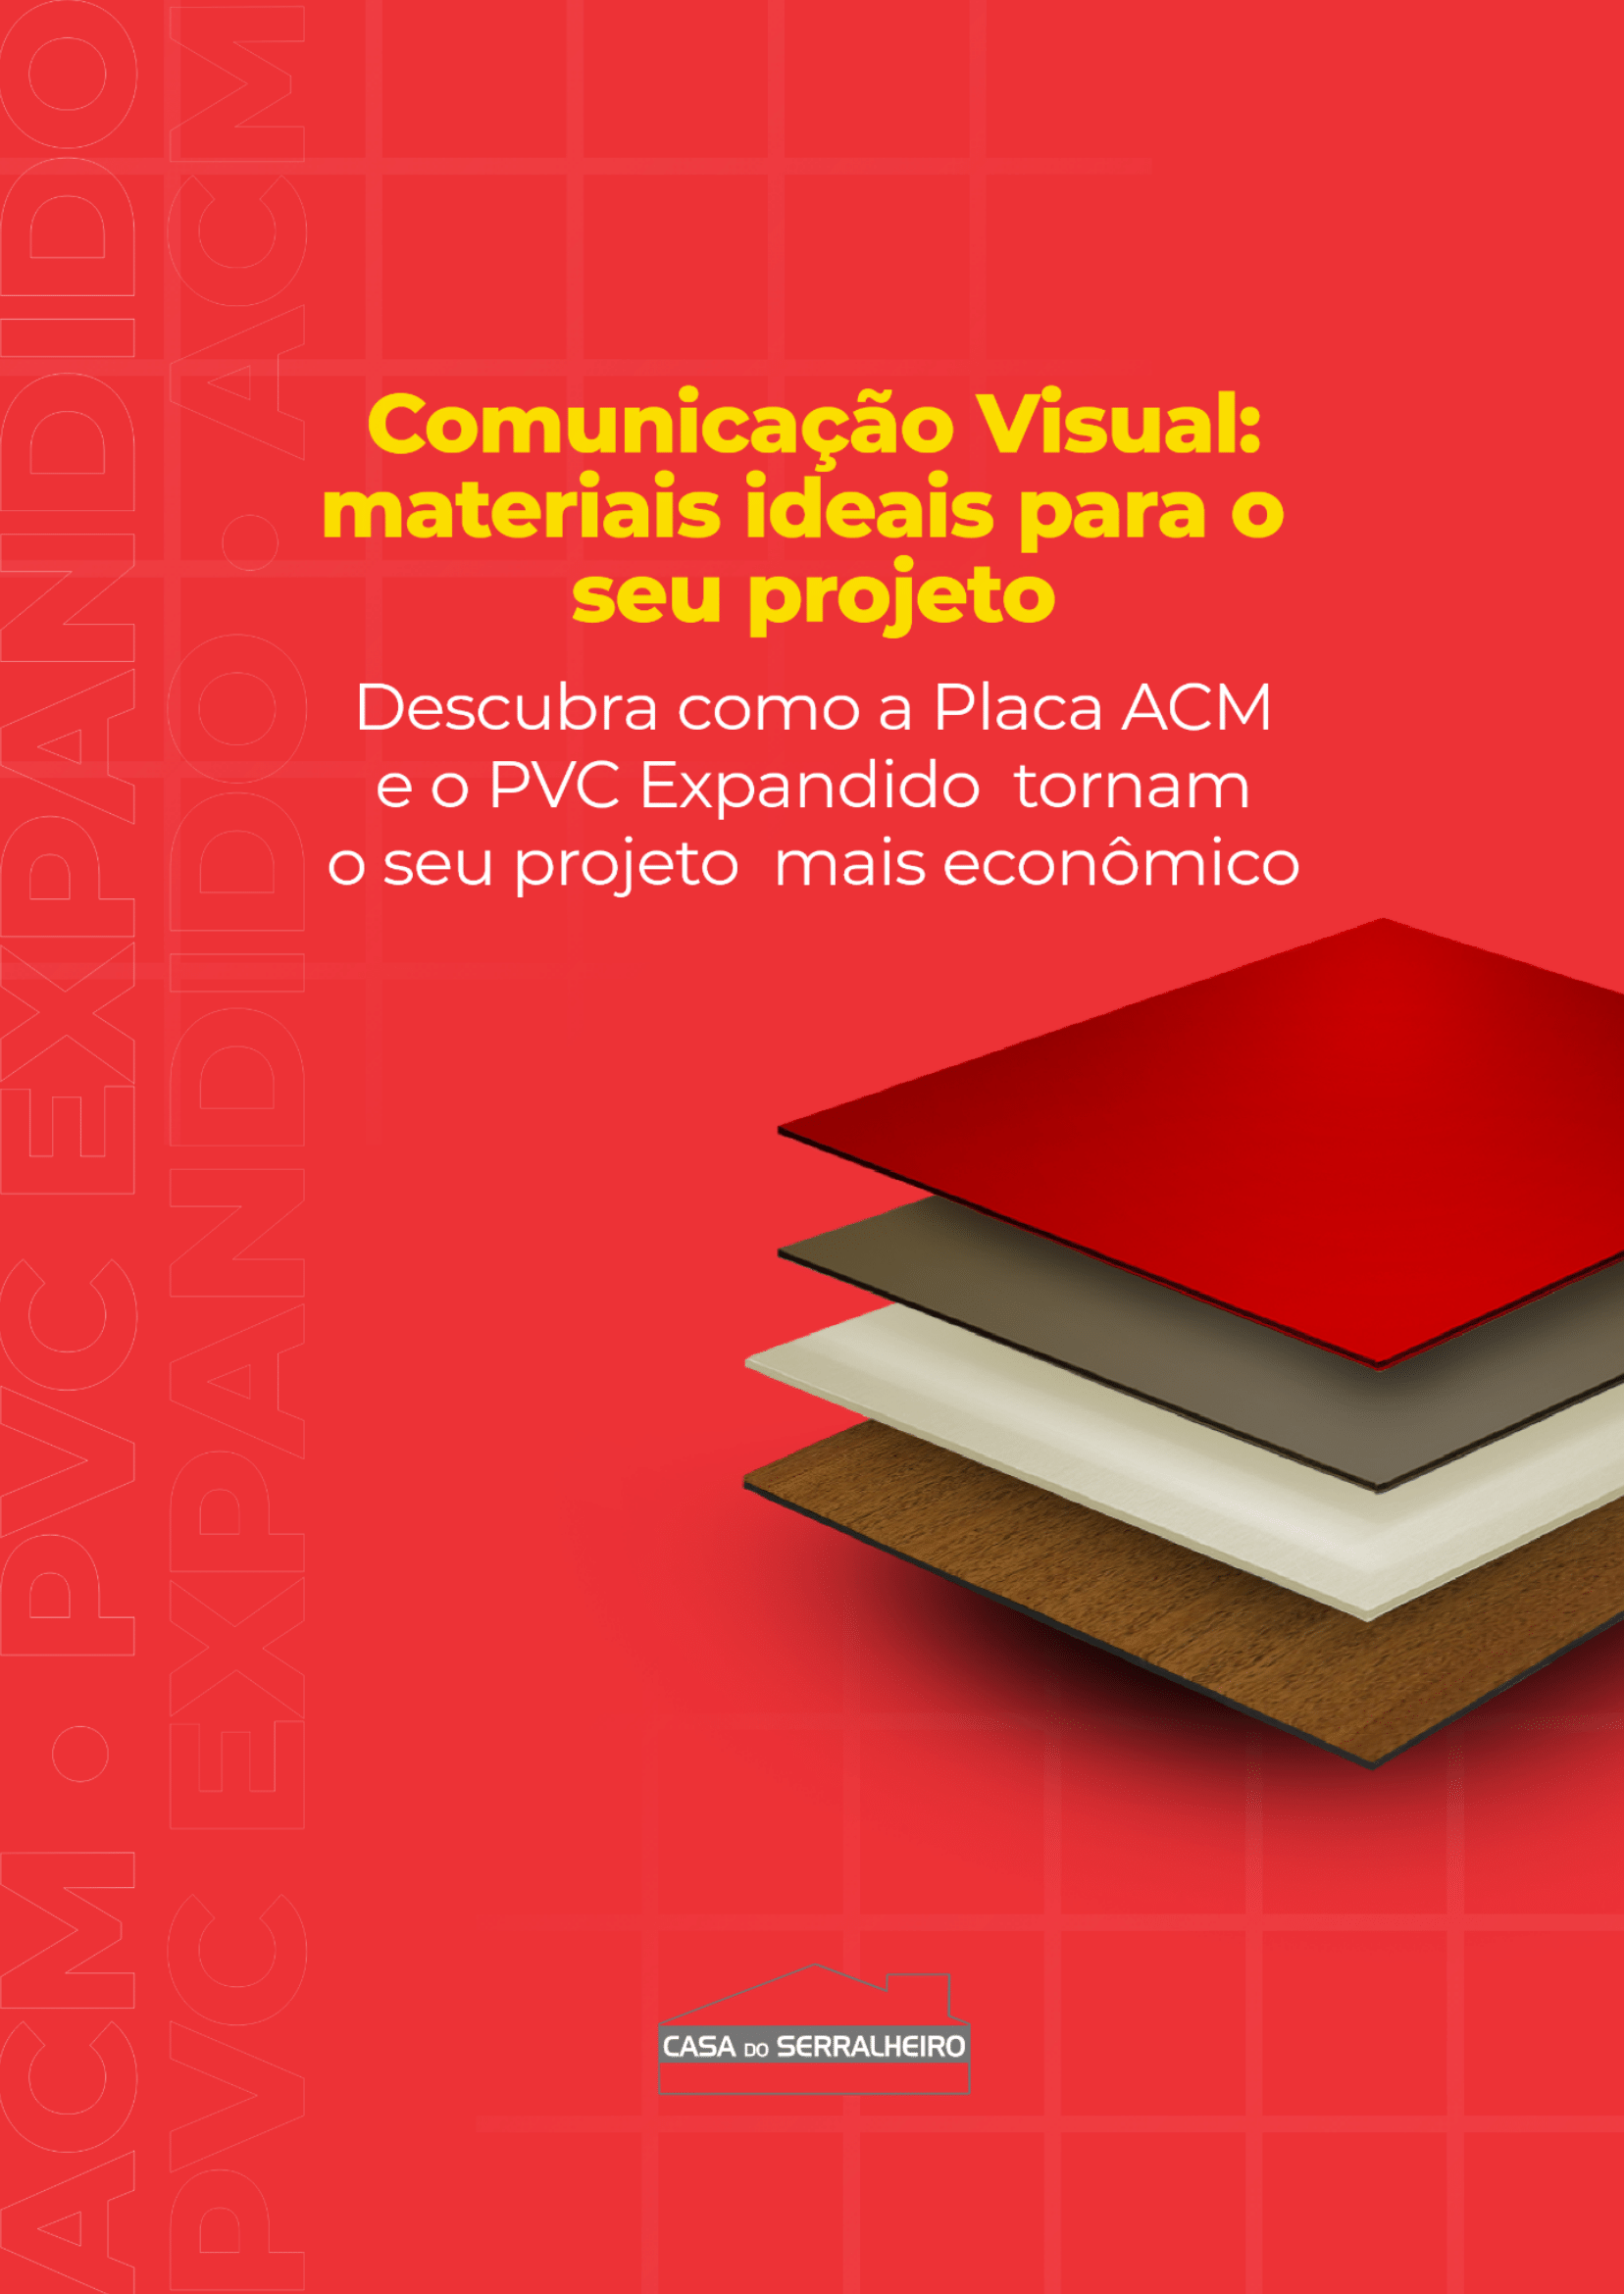 Casa do Serralheiro Comunicacao Visual Materiais ideais para o seu projeto